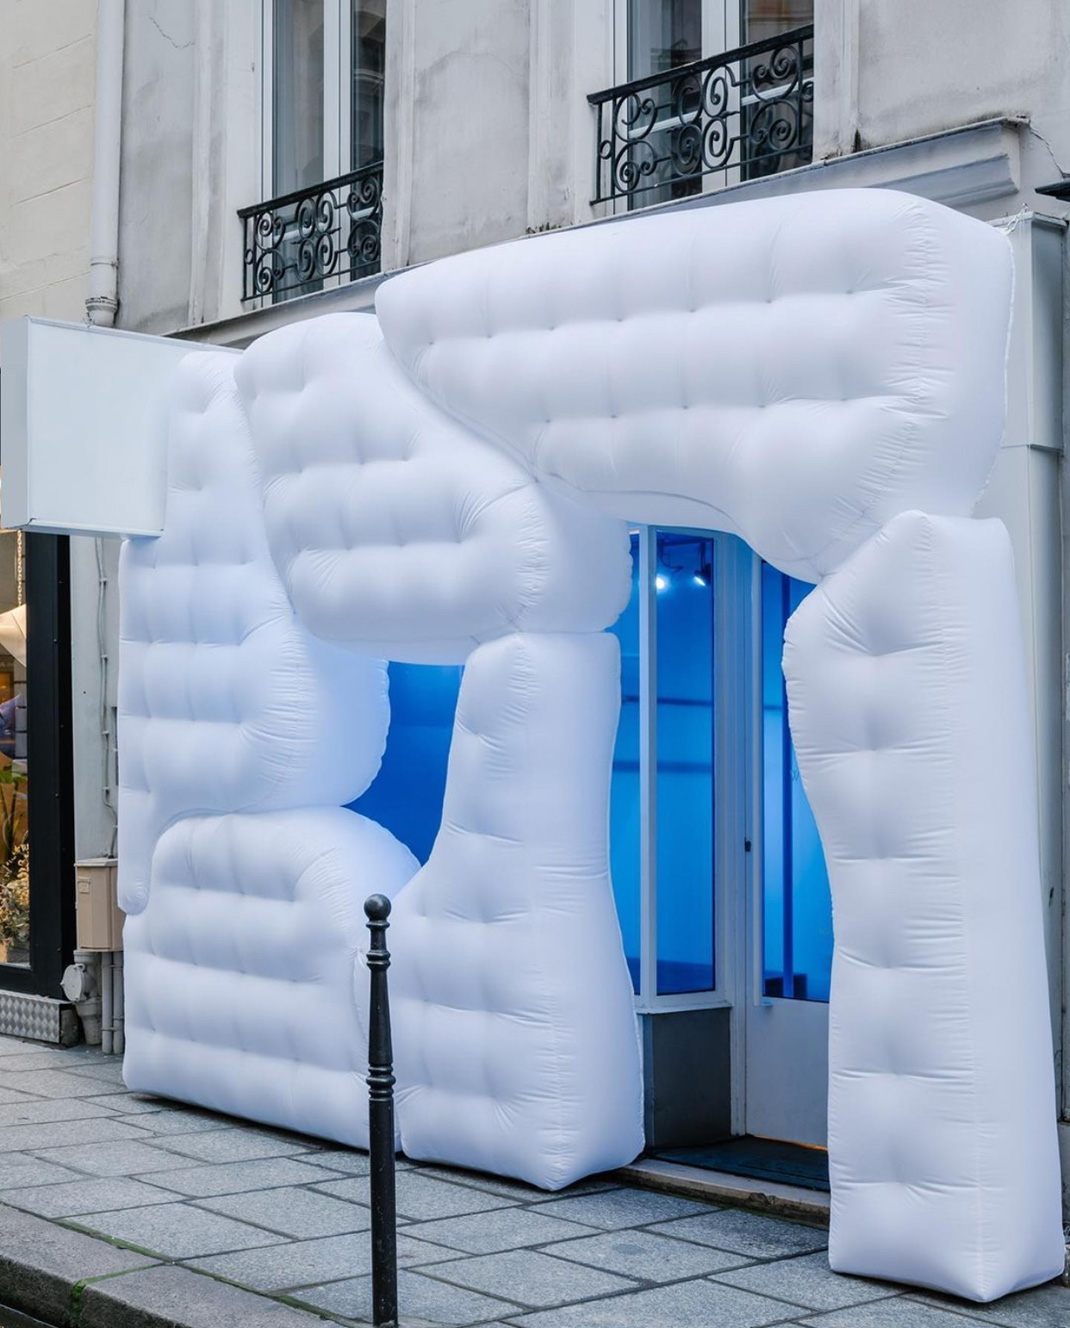 充气装置城市里的北欧景观空间美学QUARTZ CO 巴黎 装置 北欧 充气 概念店 logo设计 vi设计 空间设计